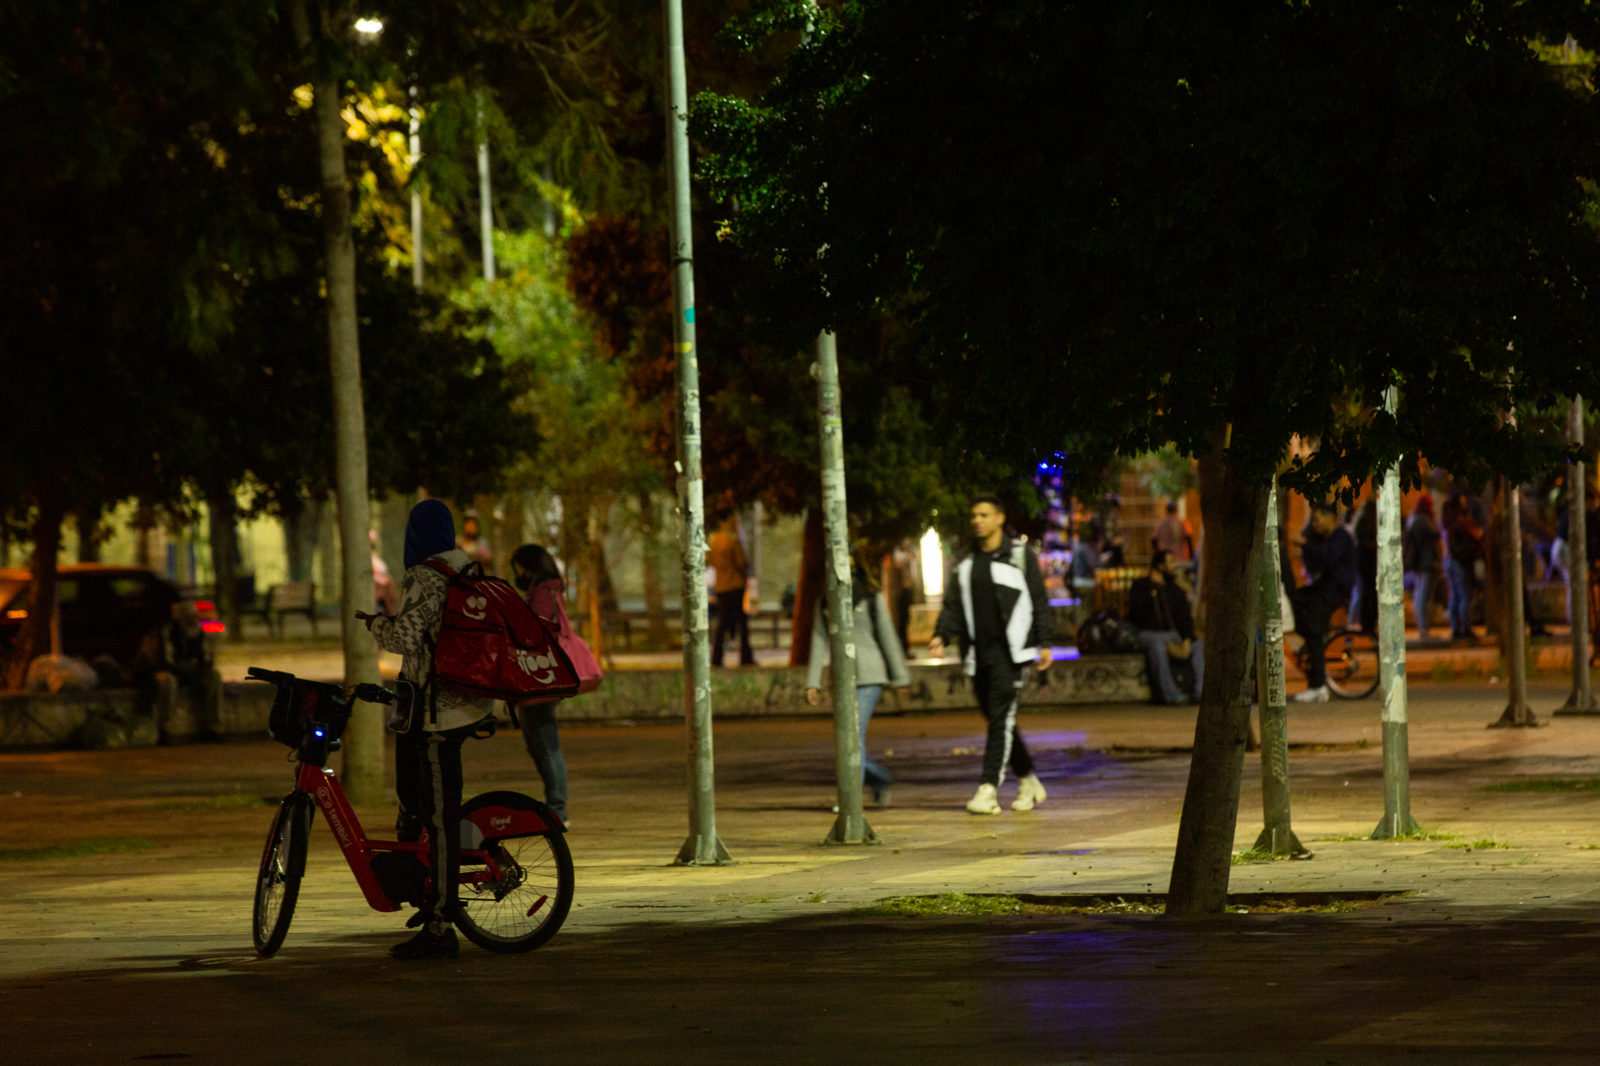 À espera da próxima entrega, uma adolescente trabalha a noite com sua mochila vermelha do Ifood e uma bicicleta